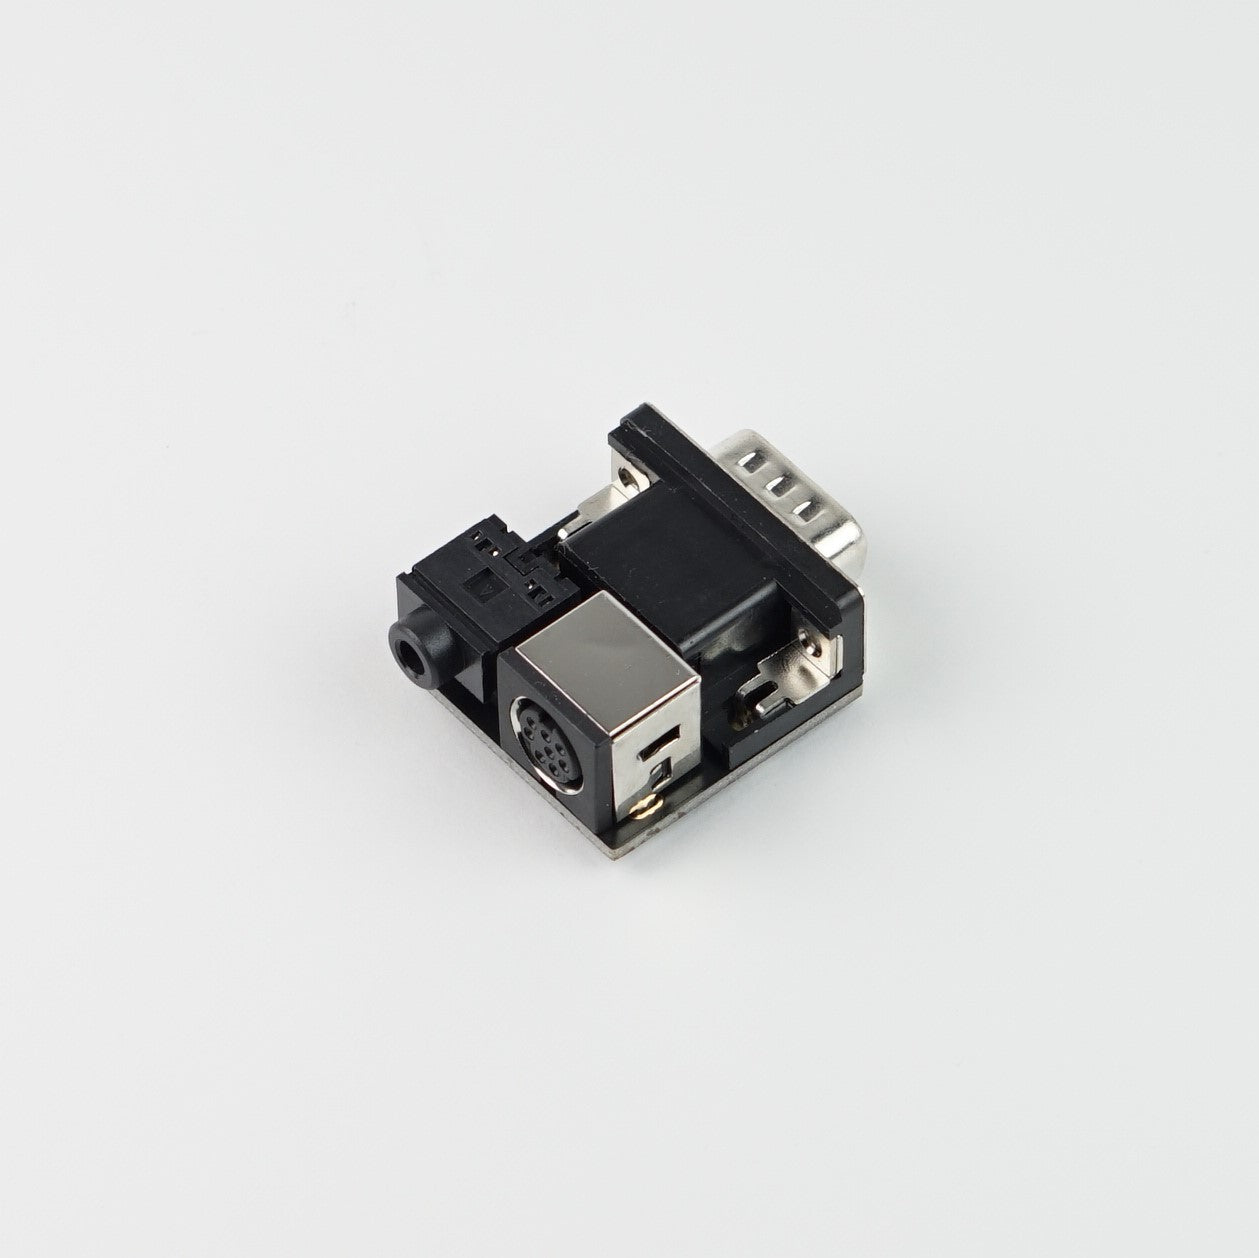 8 pin mini-DIN to HD-15 adapter